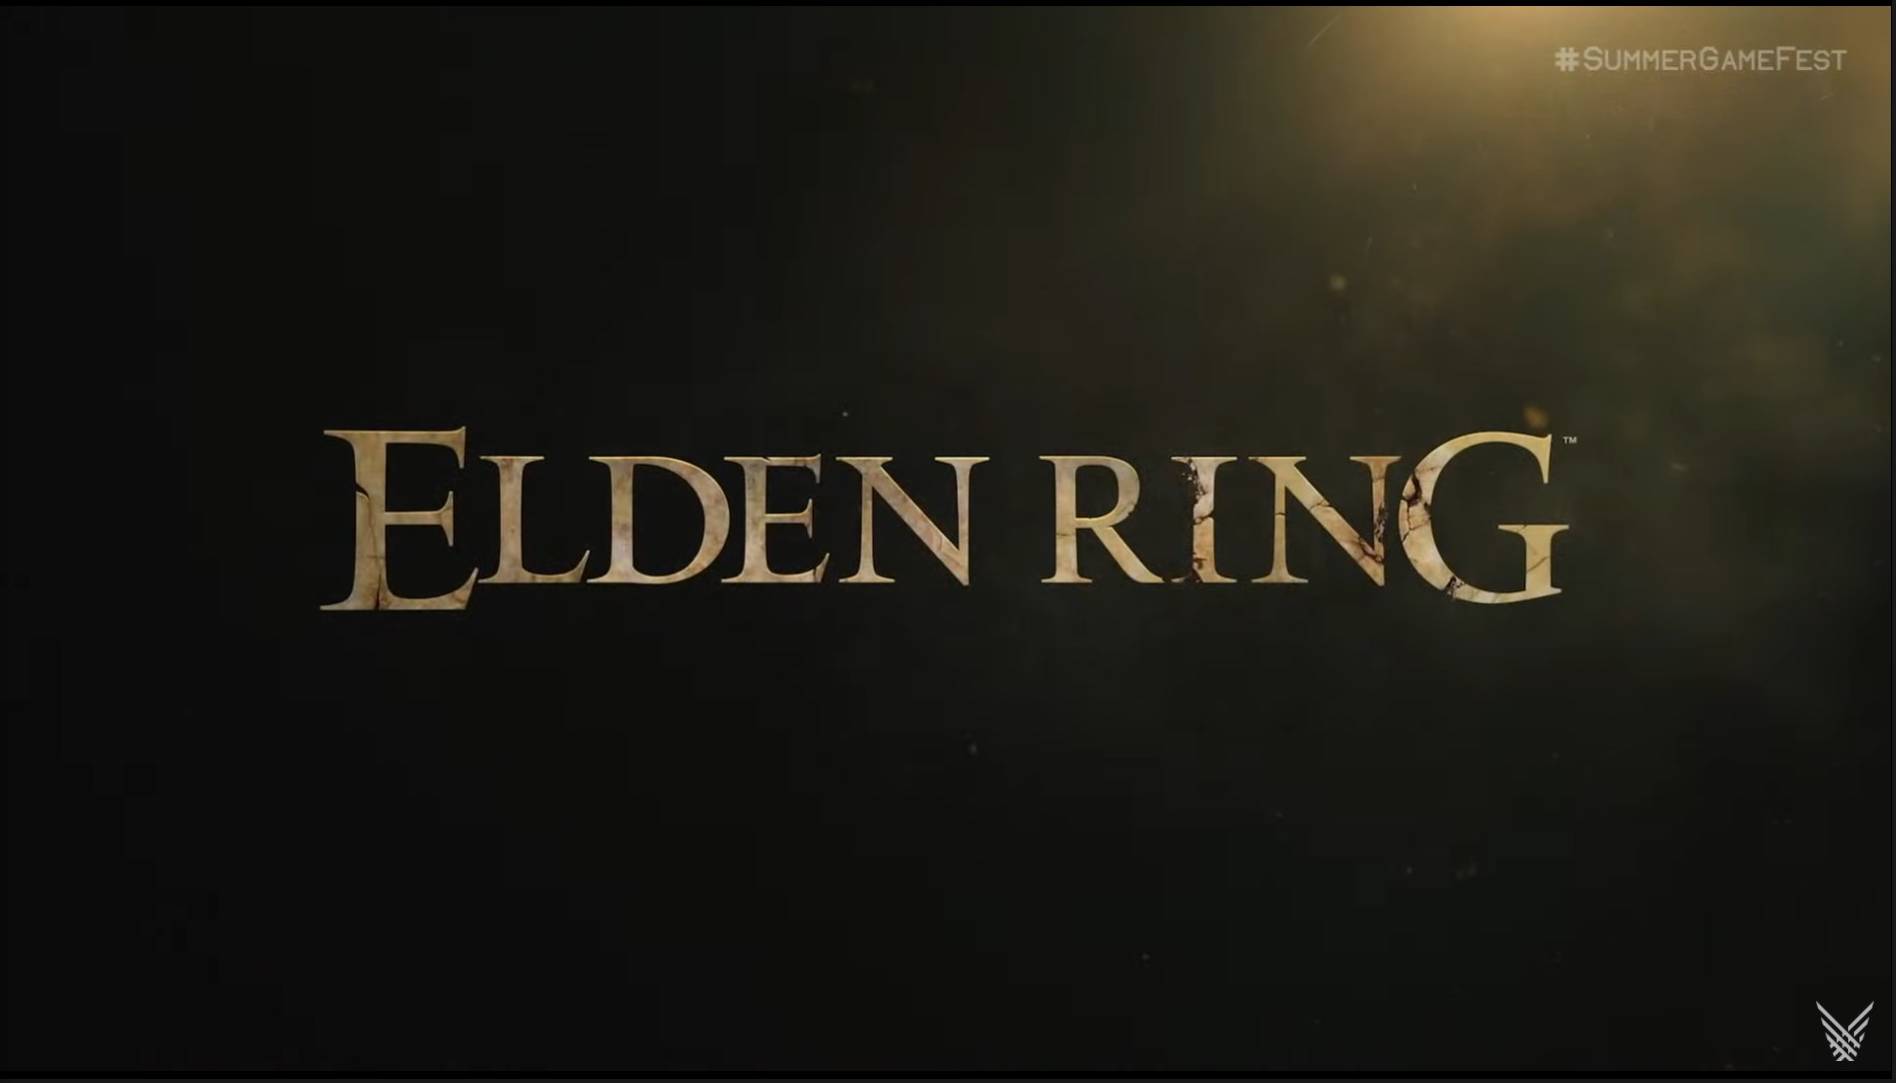 Elden Ring release date: Jan. 21, 2022